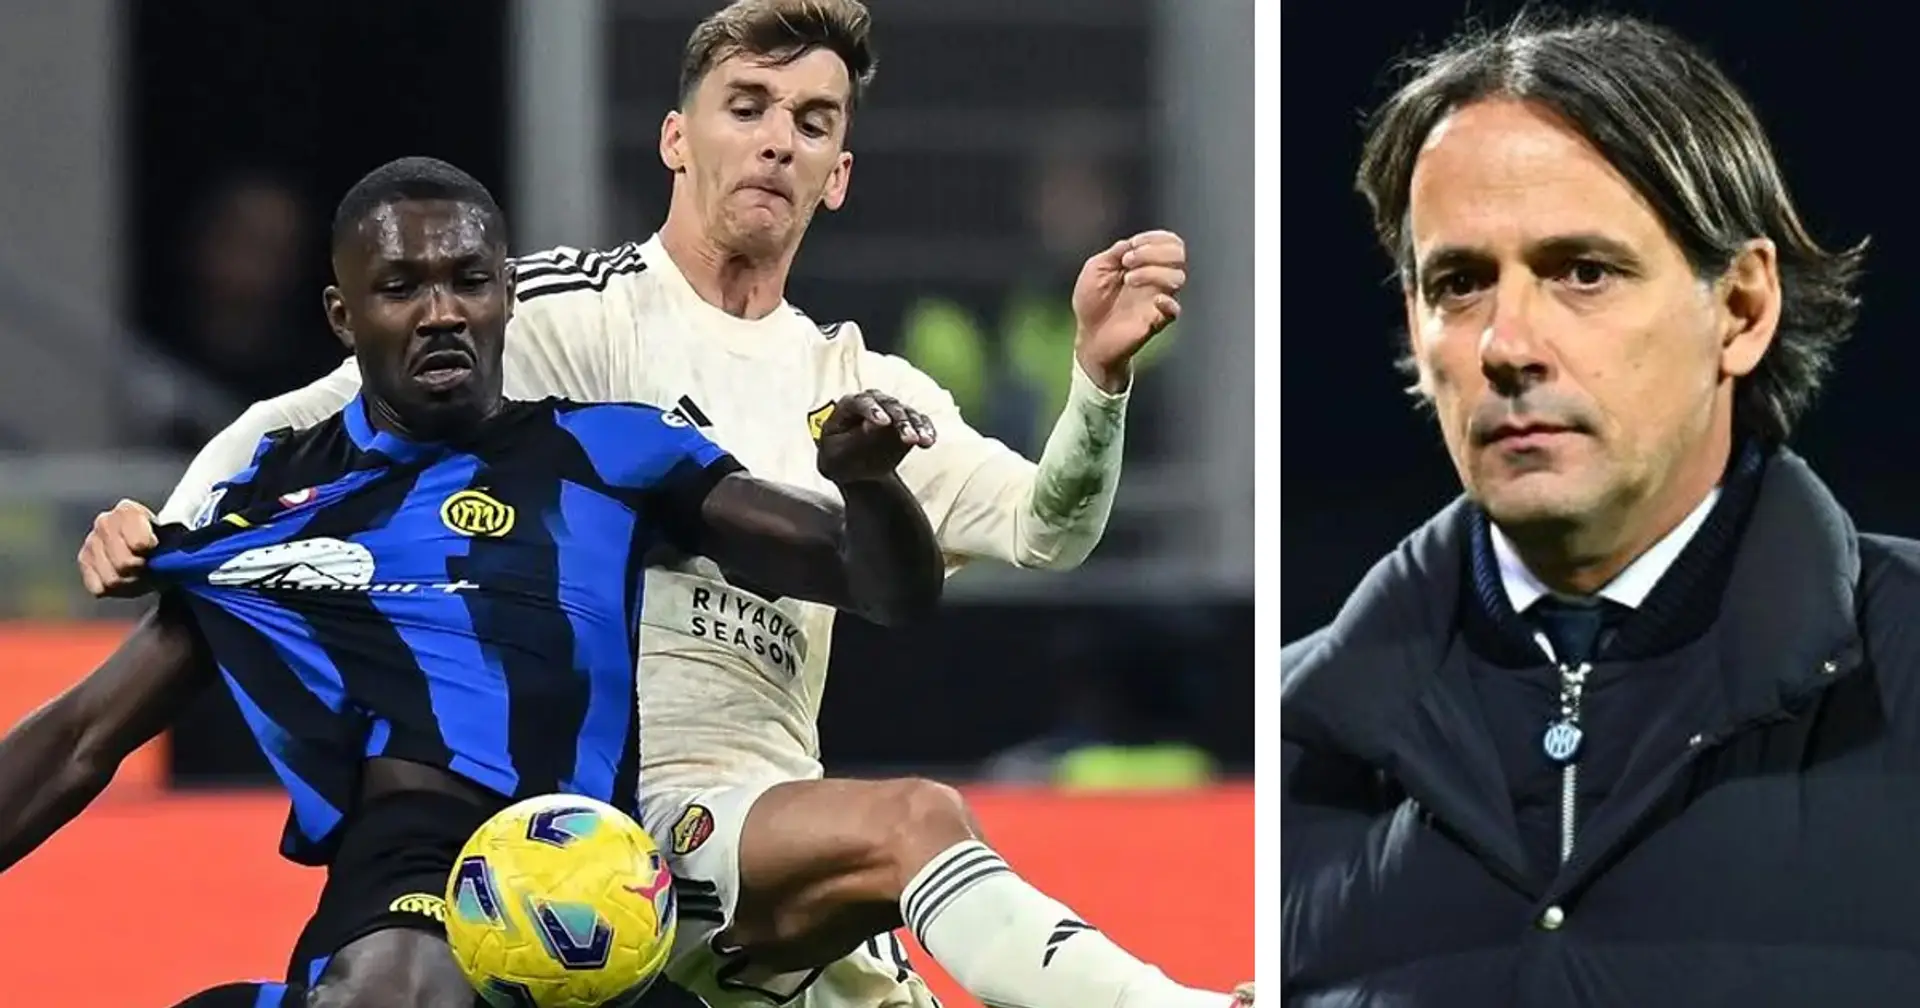 Tra infortuni e stanchezza, Inzaghi studia l'XI per la Roma: il Mister ha un piano per gestire le forze dell'Inter